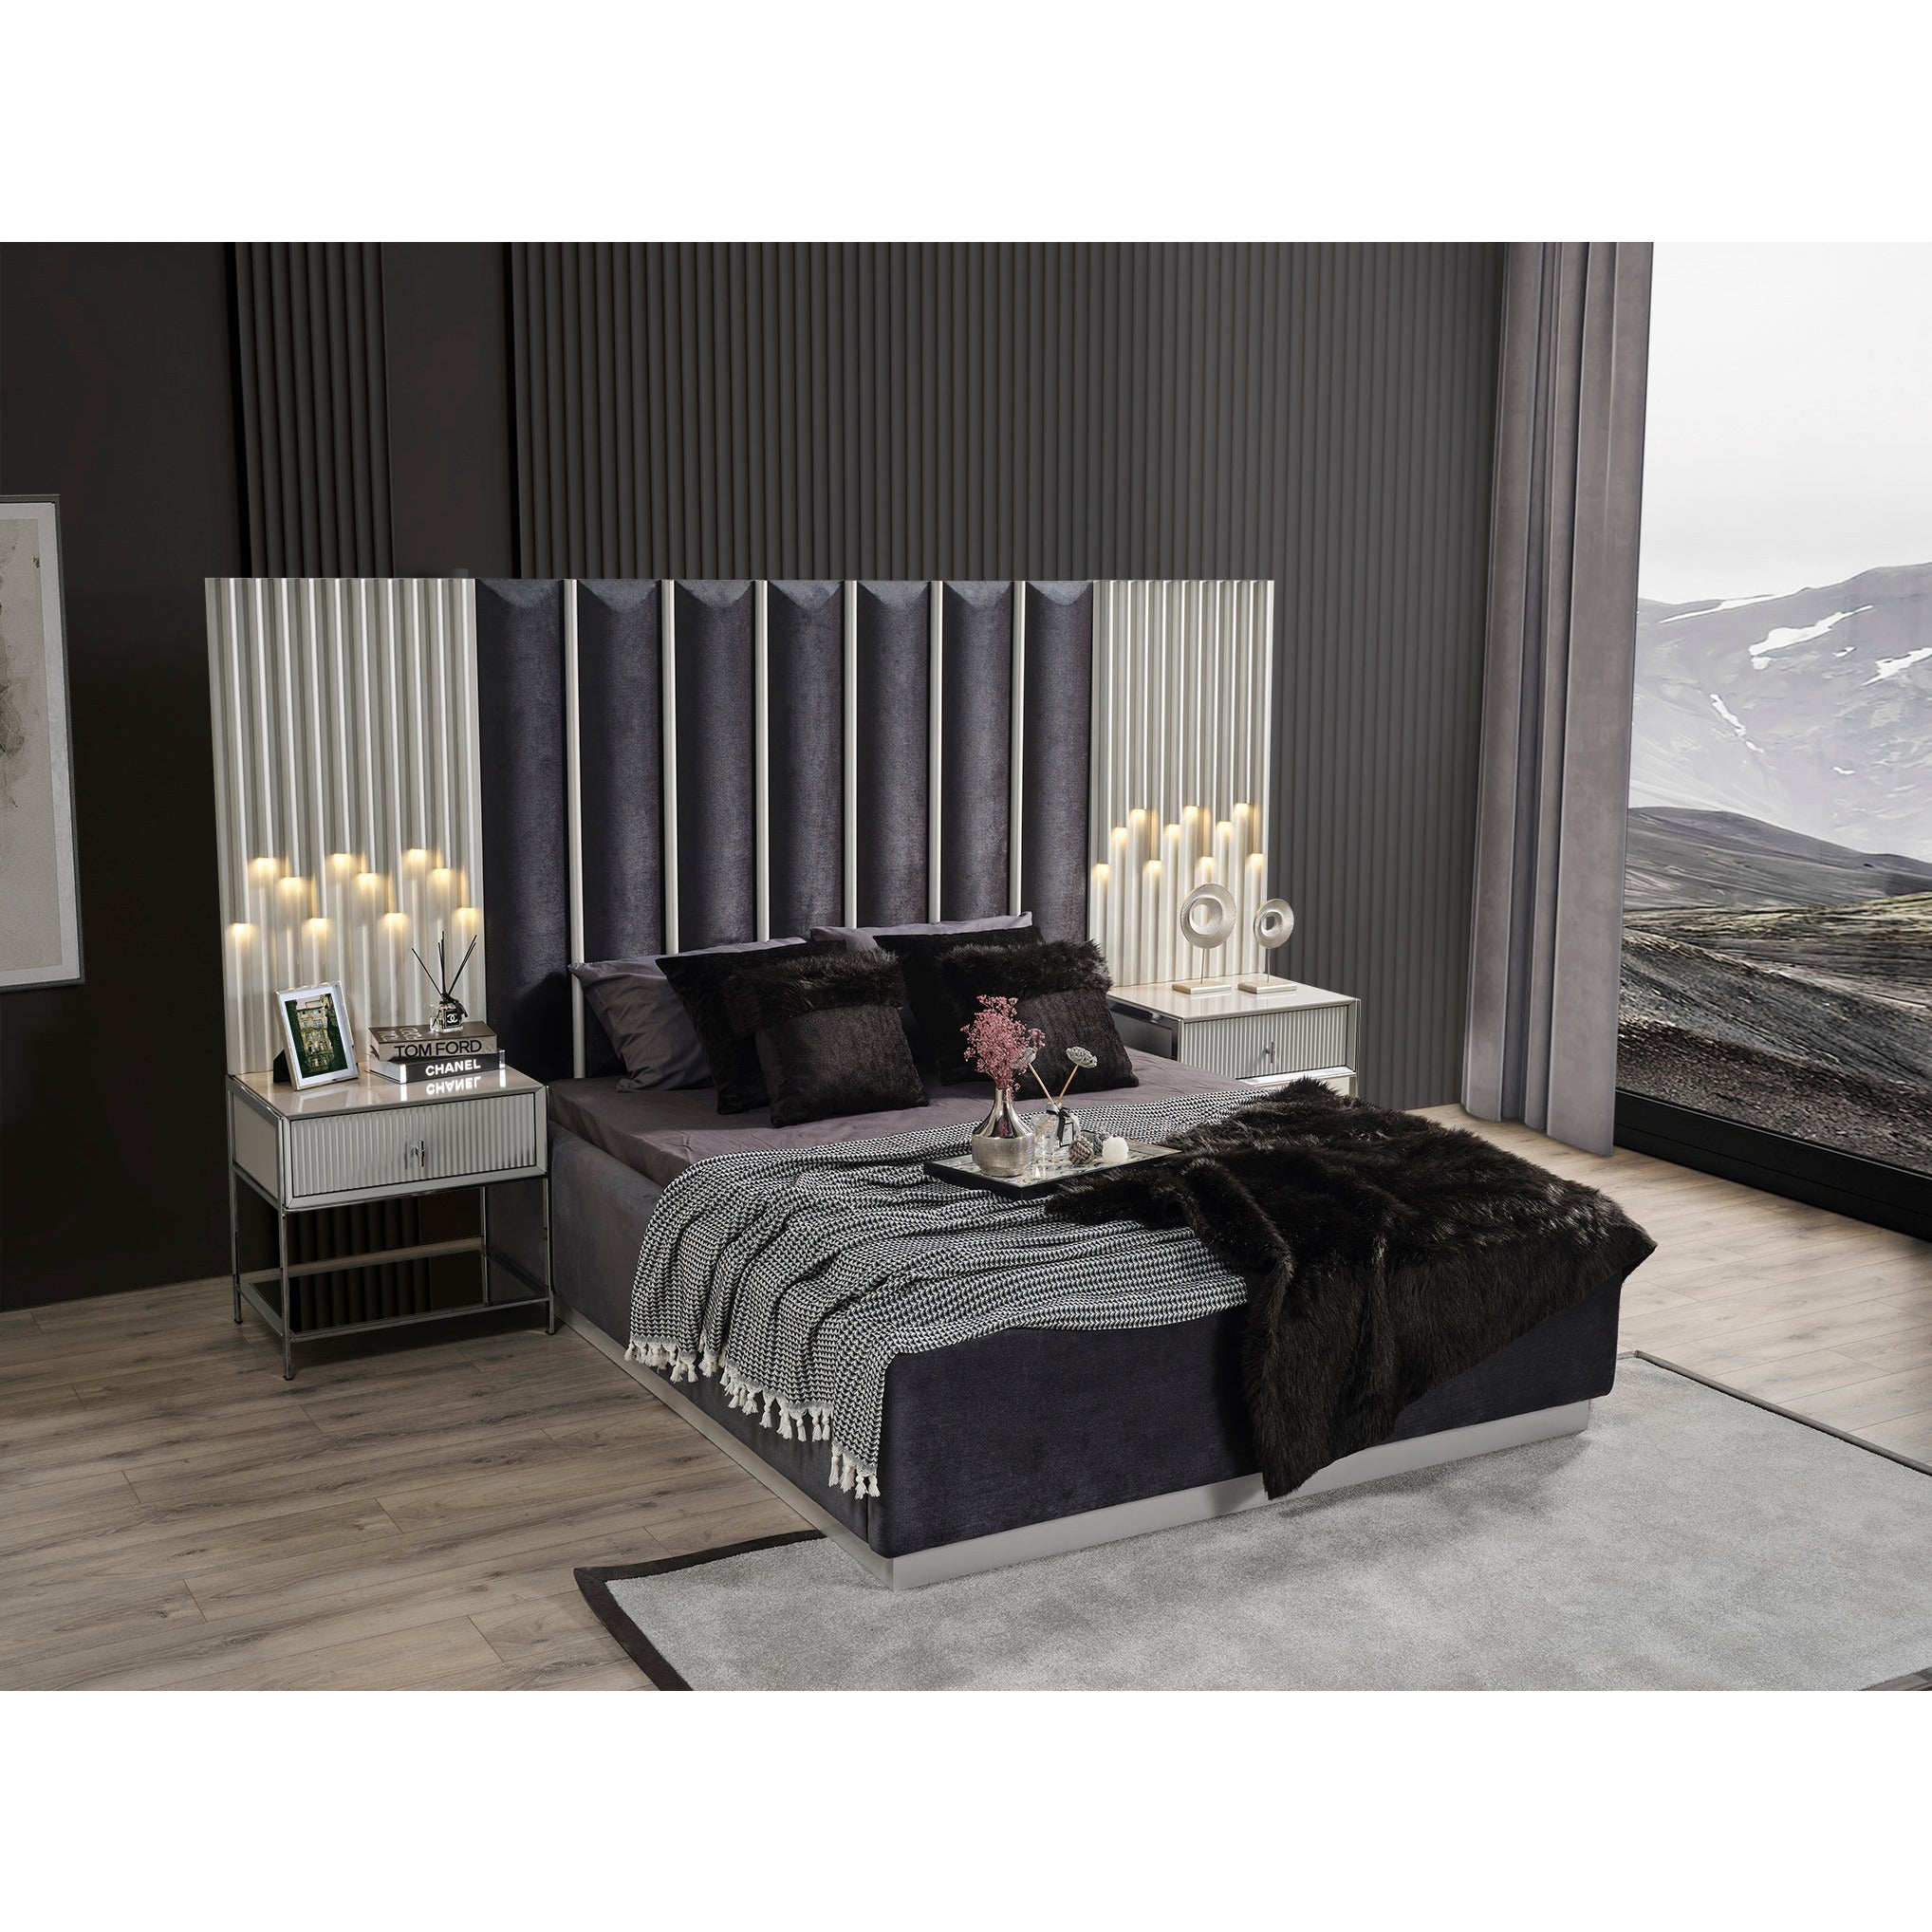 Pirlanta Säng med Förvaring - LINE Furniture Group